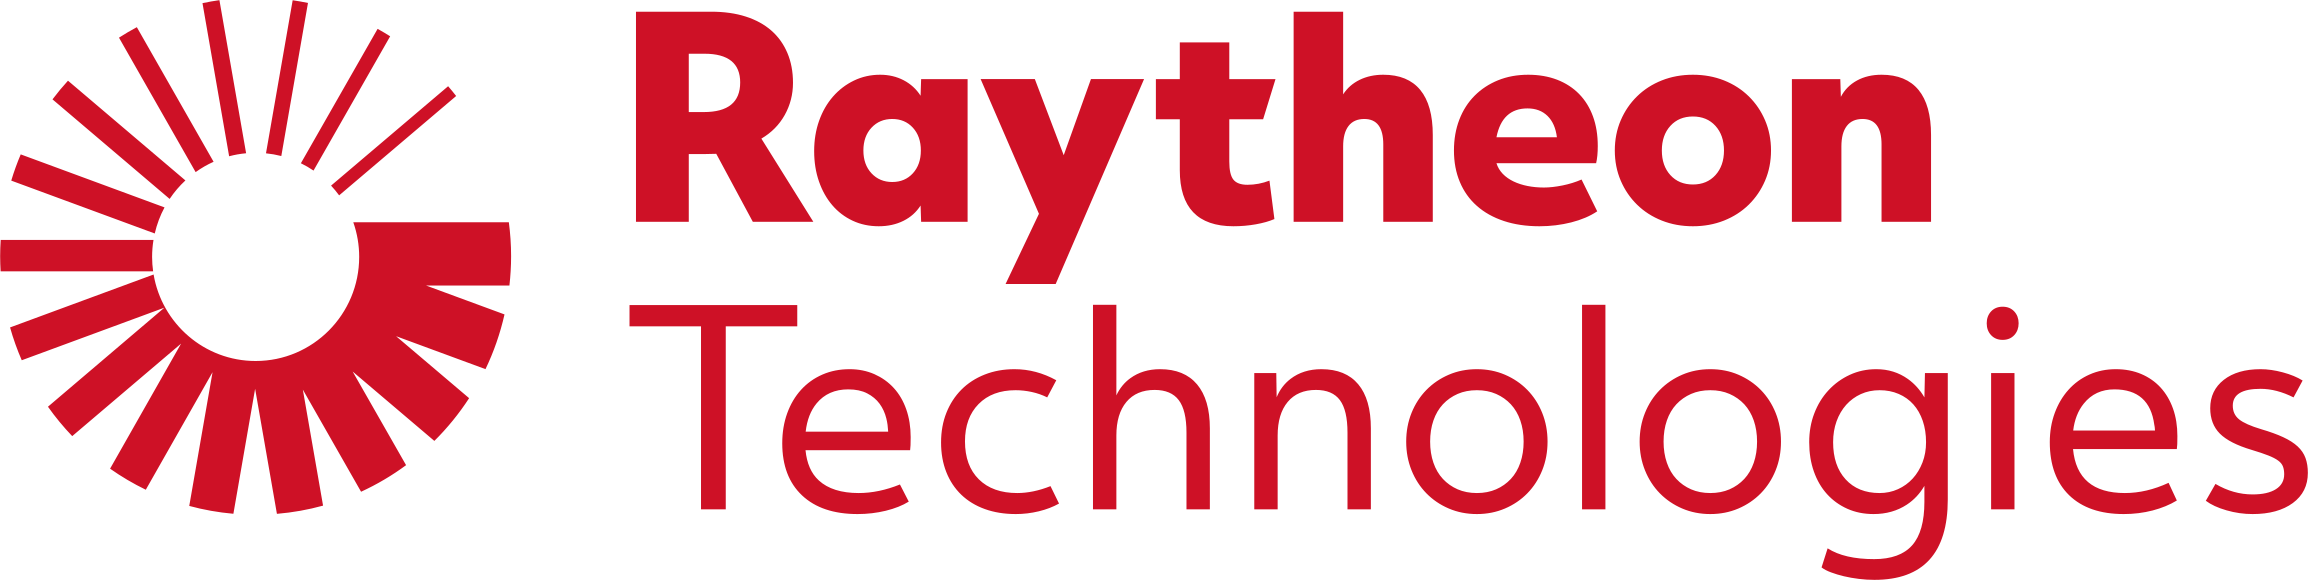 Raytheon Technologies logo.